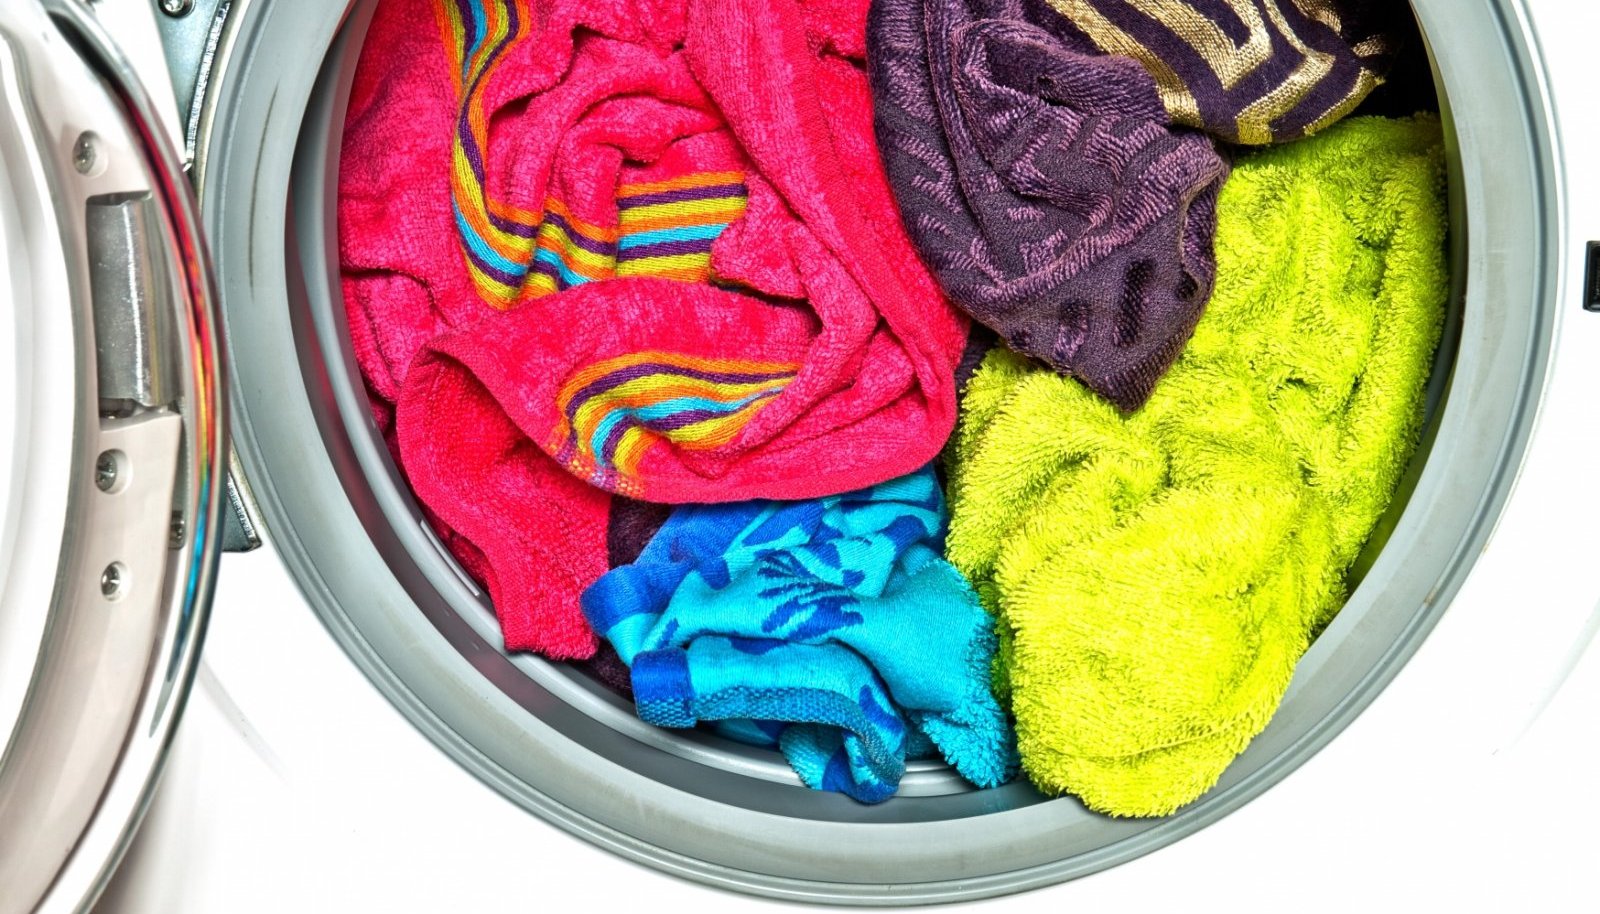 Полотенце неприятный запах. Цветные вещи. Мятое белье в машинке. Вонючее полотенце. Одежда после стирки пахнет затхлостью.